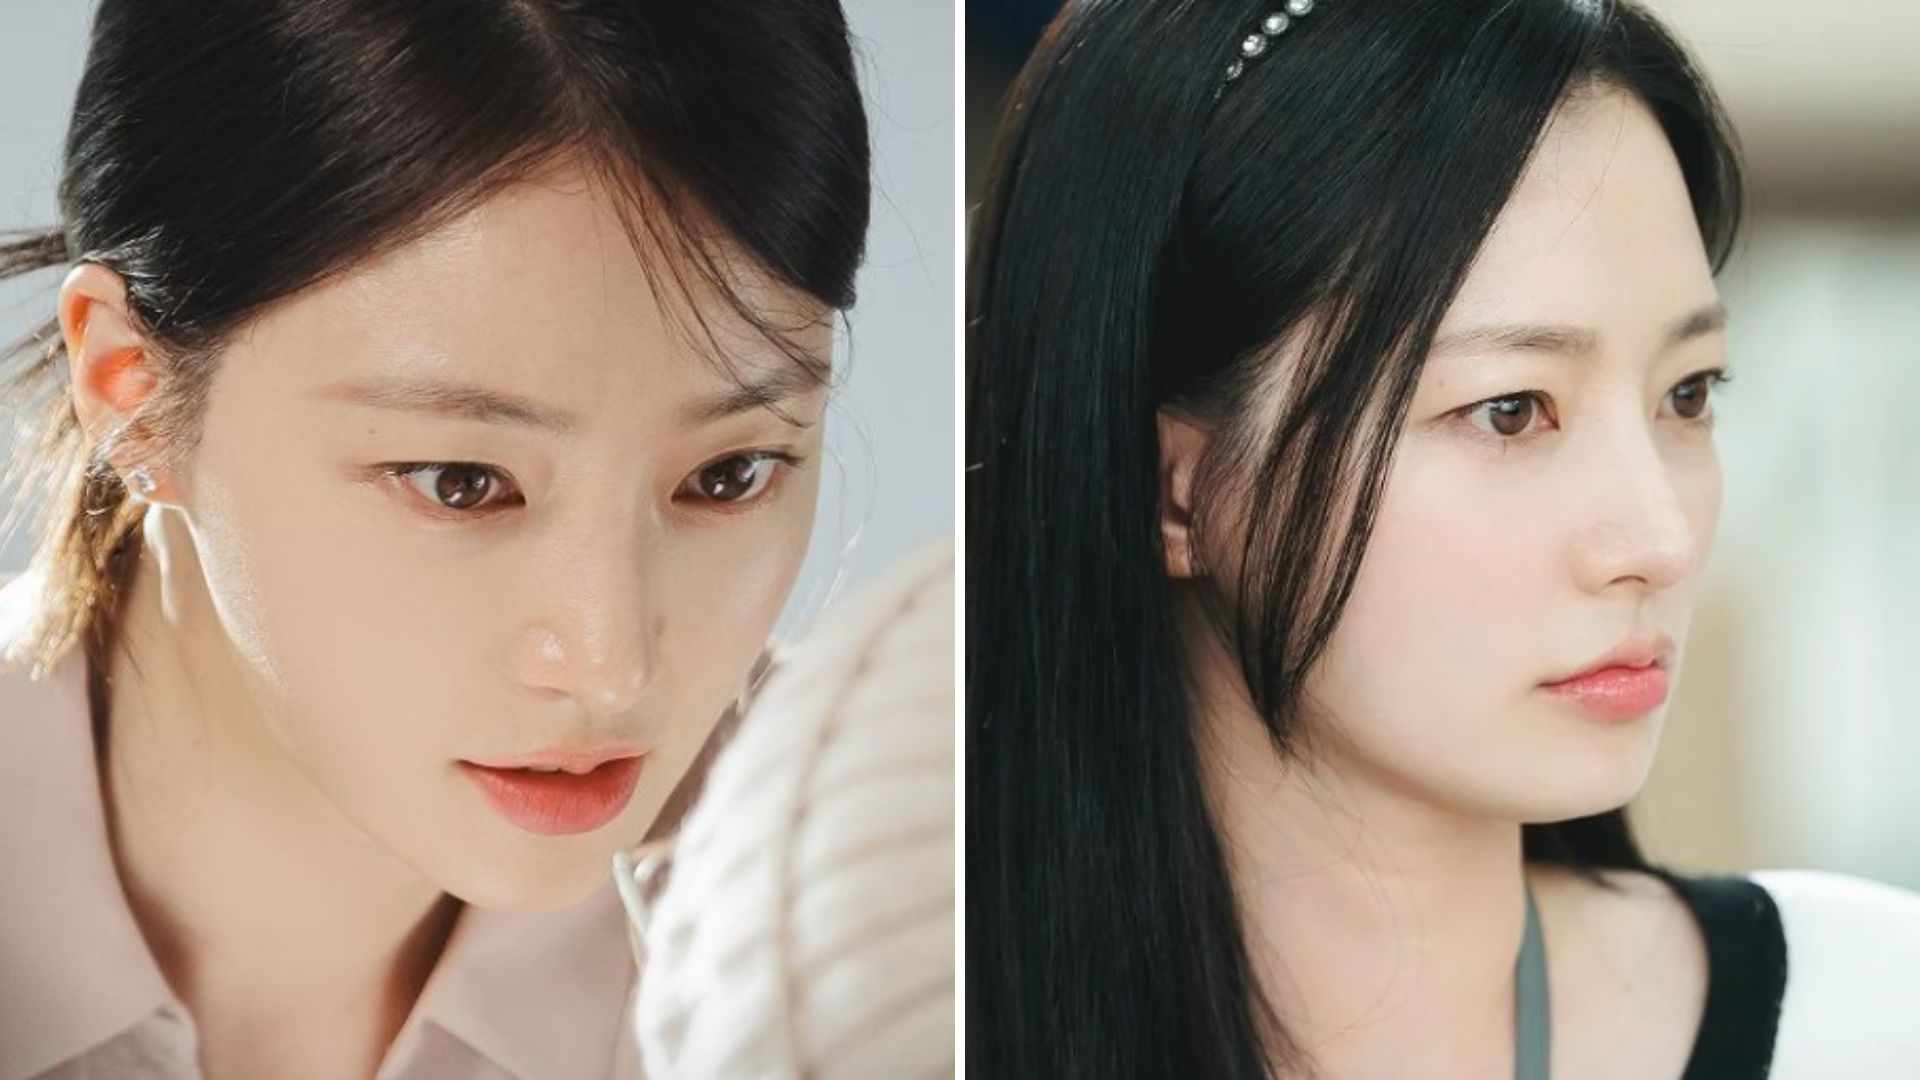 5 Drama Korea Song Ha Yoon, Teman Toxic dan Pick Me Girl di Drakor Marry My Husband